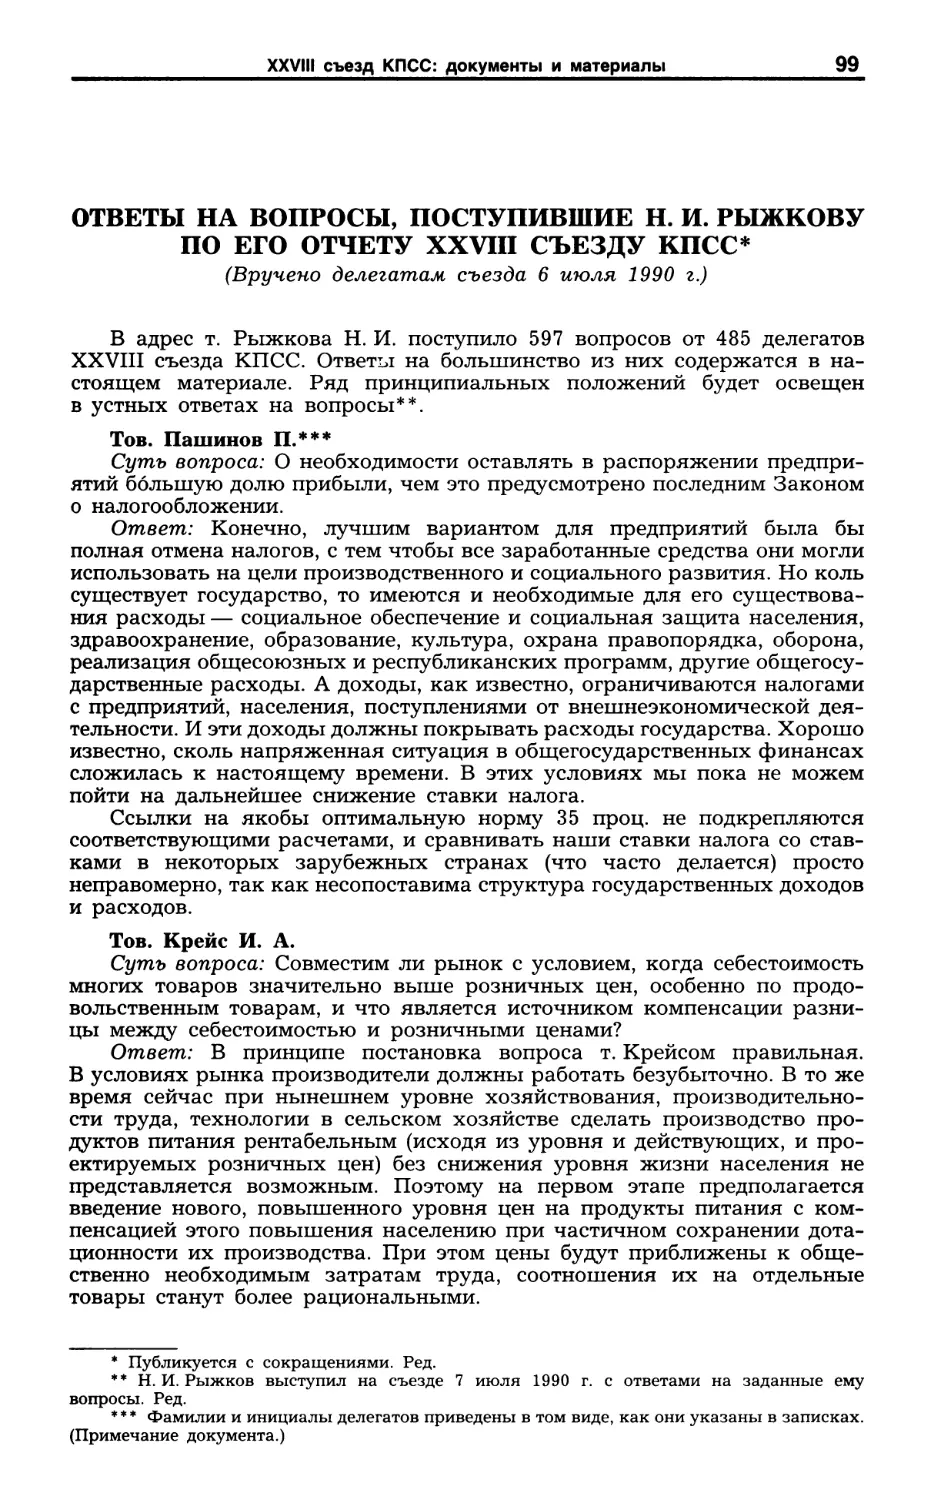 Ответы на вопросы, поступившие Н. И. Рыжкову по его отчету XXVIII съезду КПСС